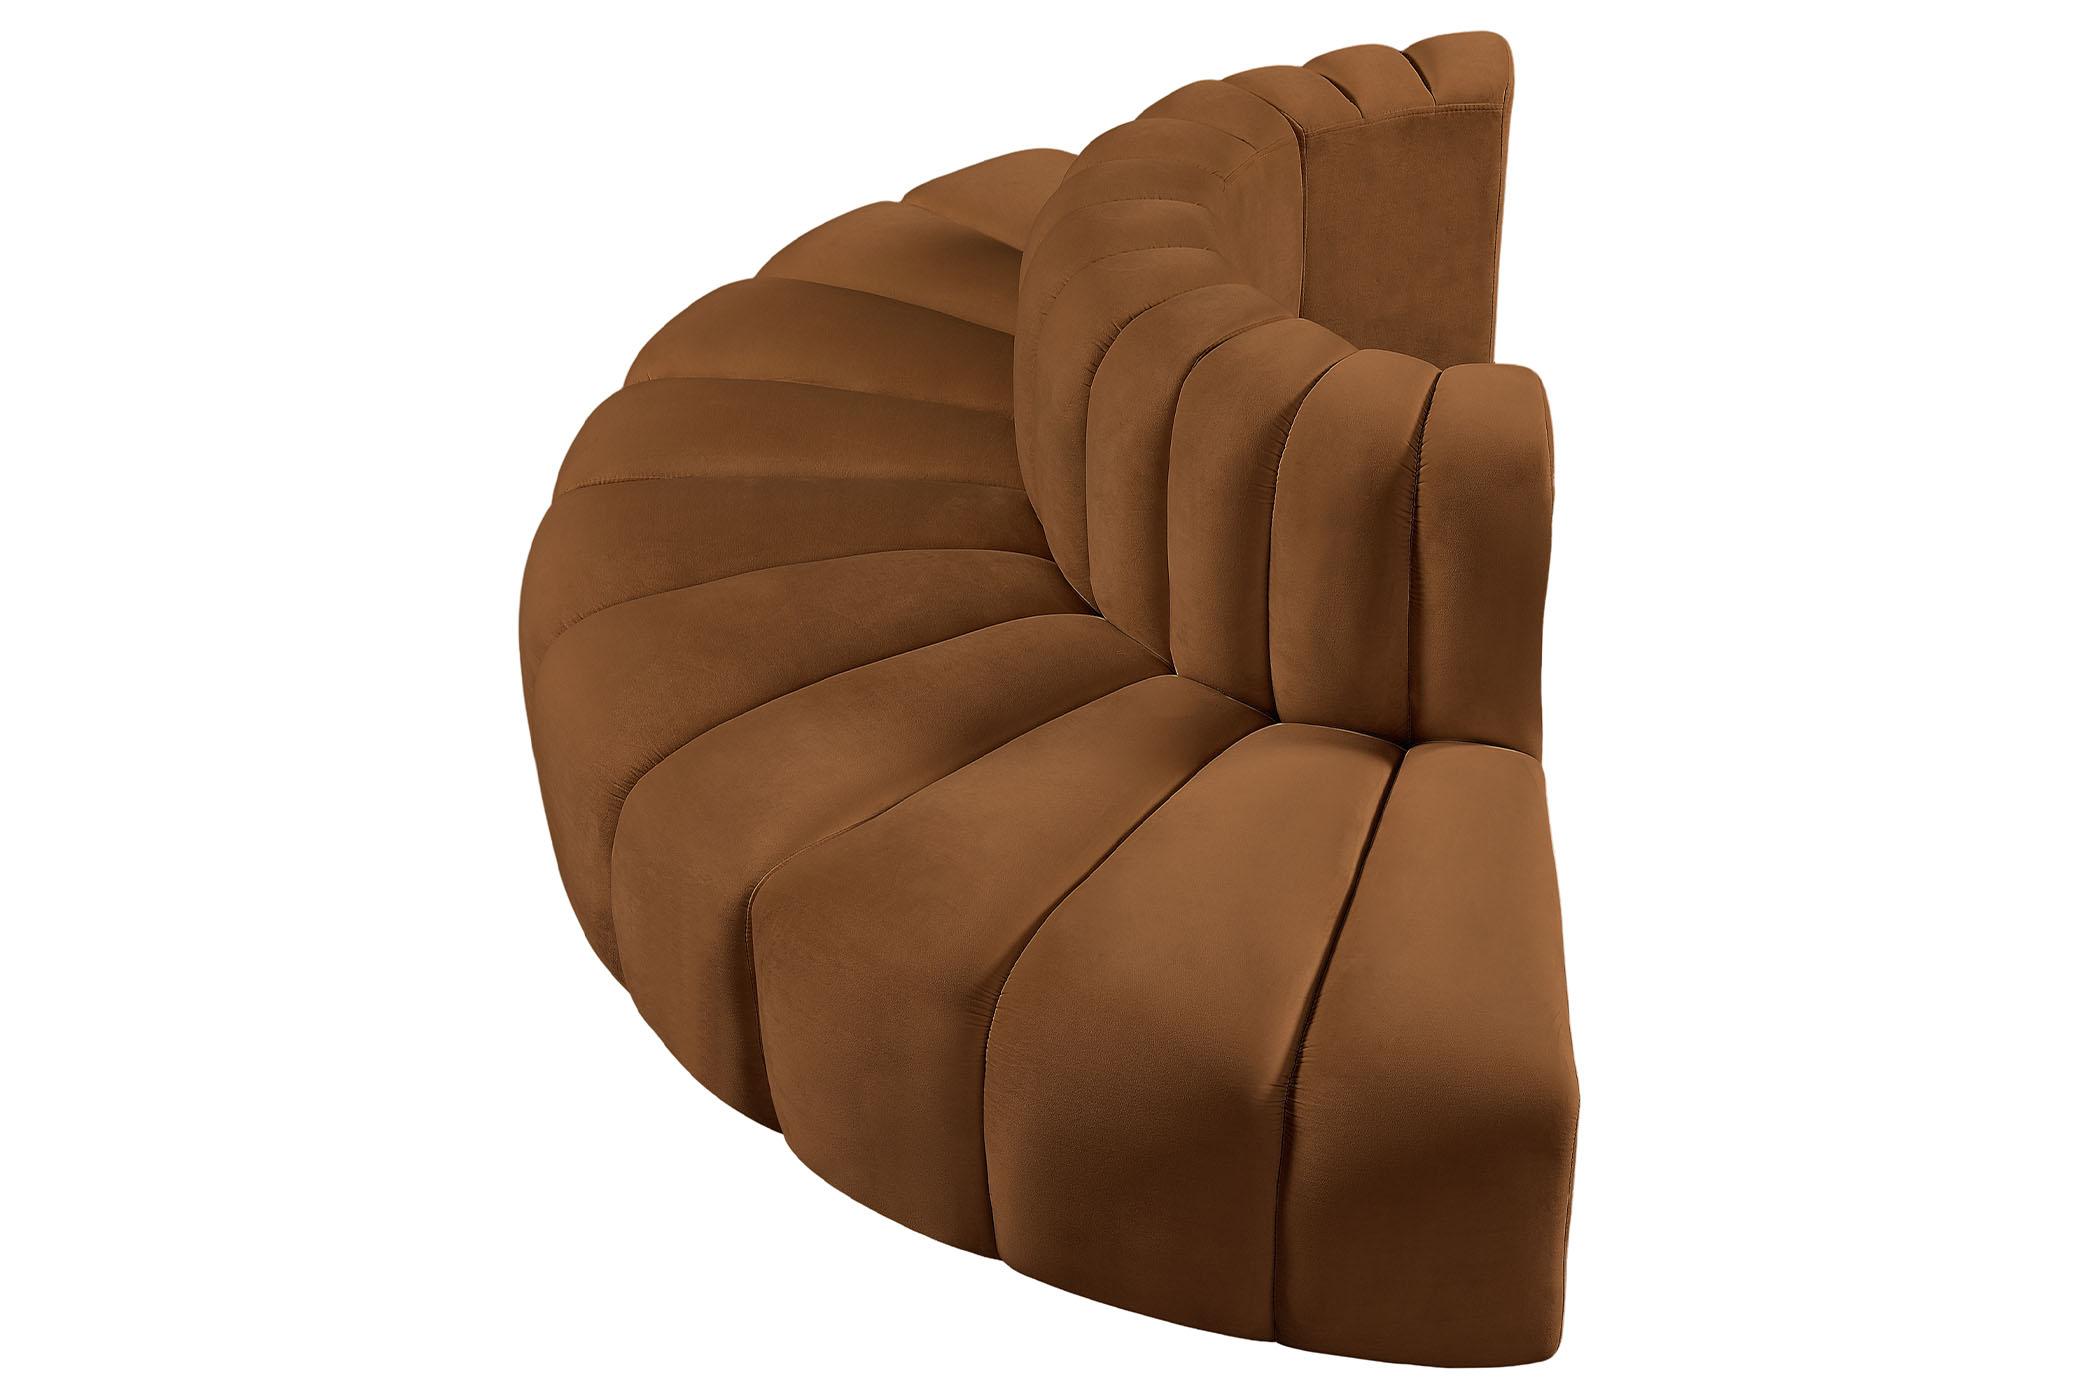 

    
103Saddle-S4G Meridian Furniture Modular Sectional Sofa
